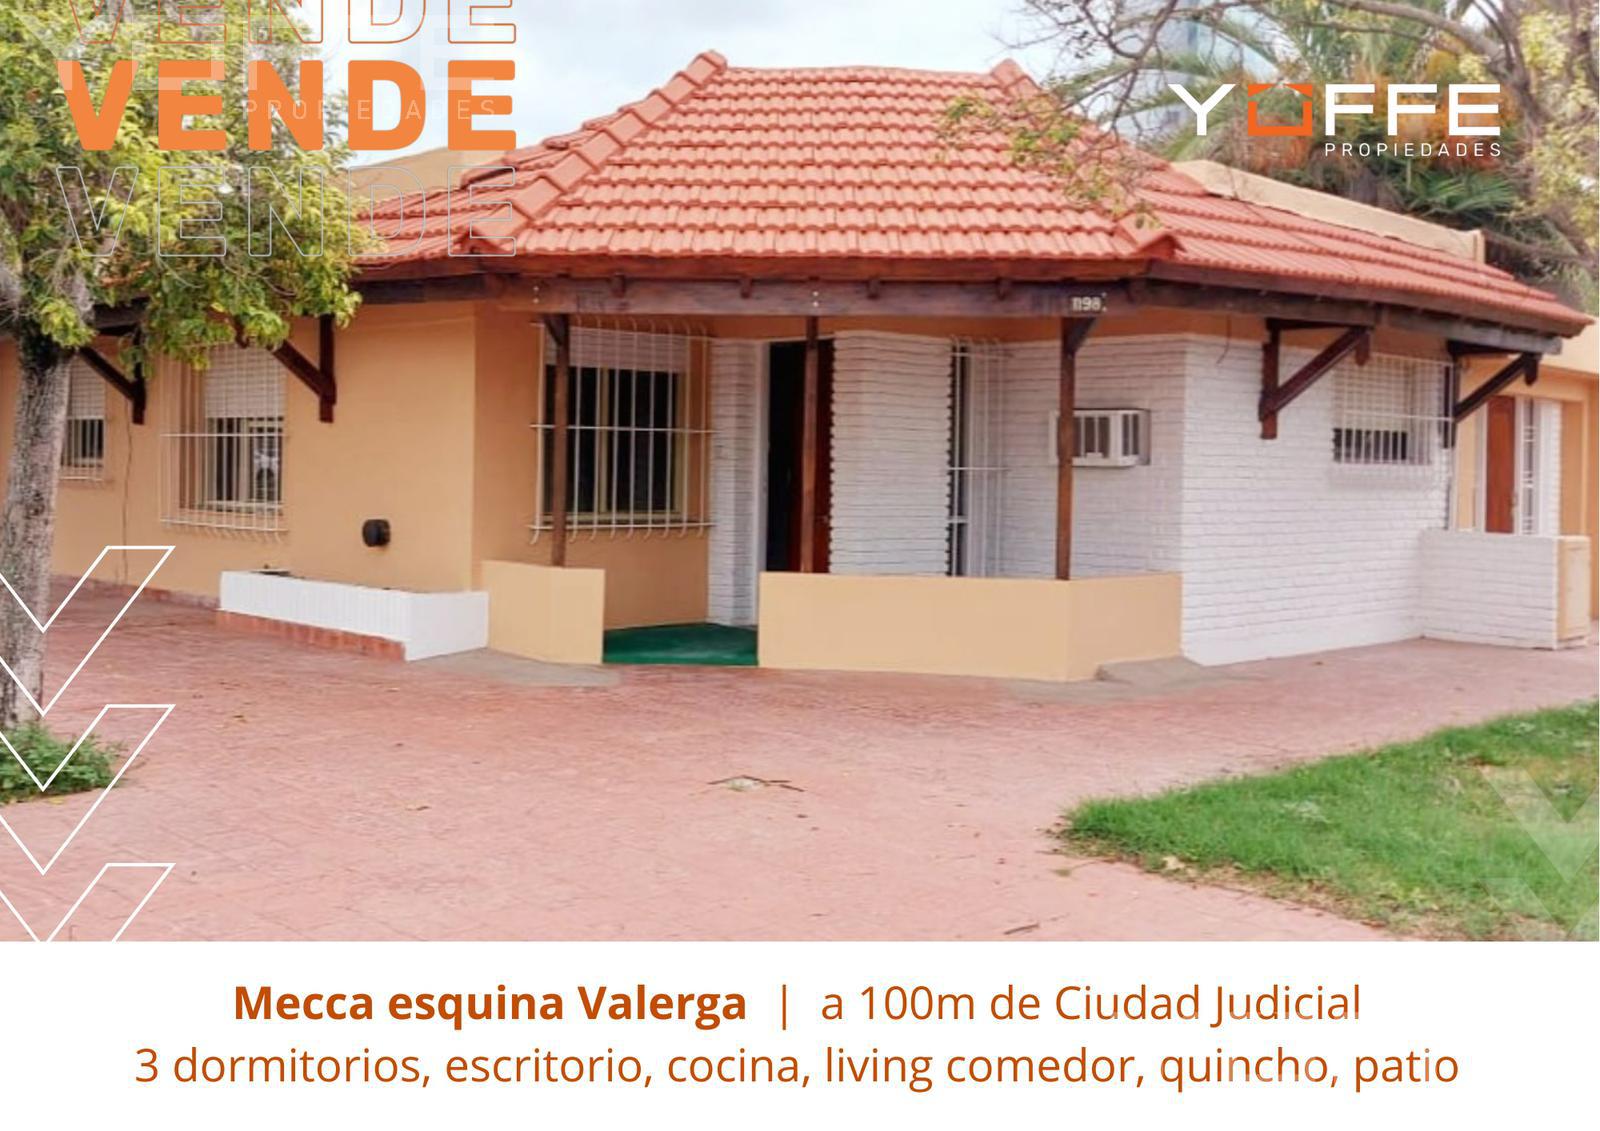 #4912140 | Venta | Casa | Villa Zenon Santillan (Yoffe propiedades)